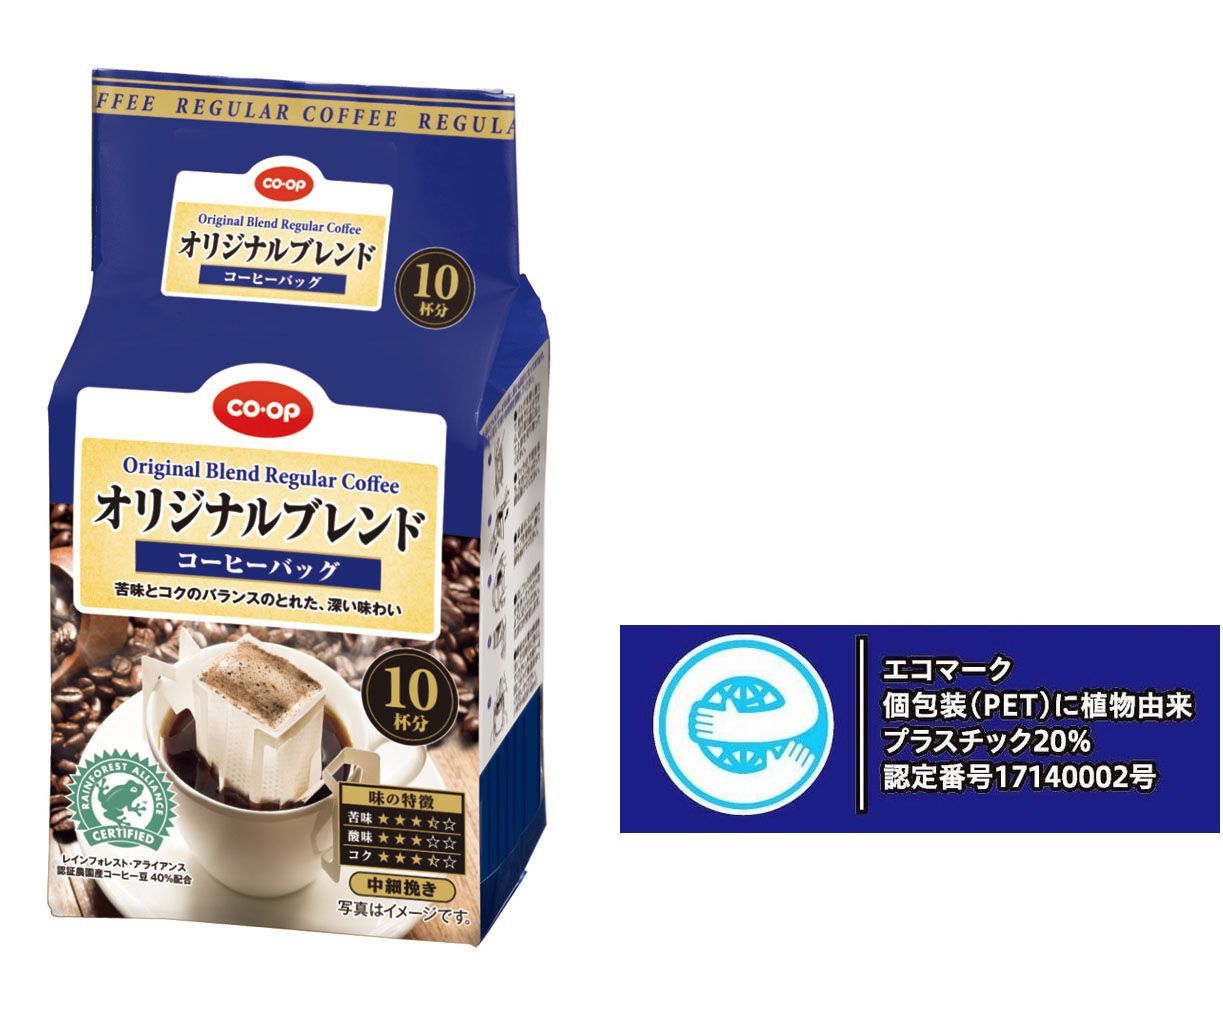 植物由来プラスチック 再生プラスチック 包材を使用したエコマーク付き商品 コーヒー 洗剤 を発売 ニュースリリース 日本生活協同組合連合会